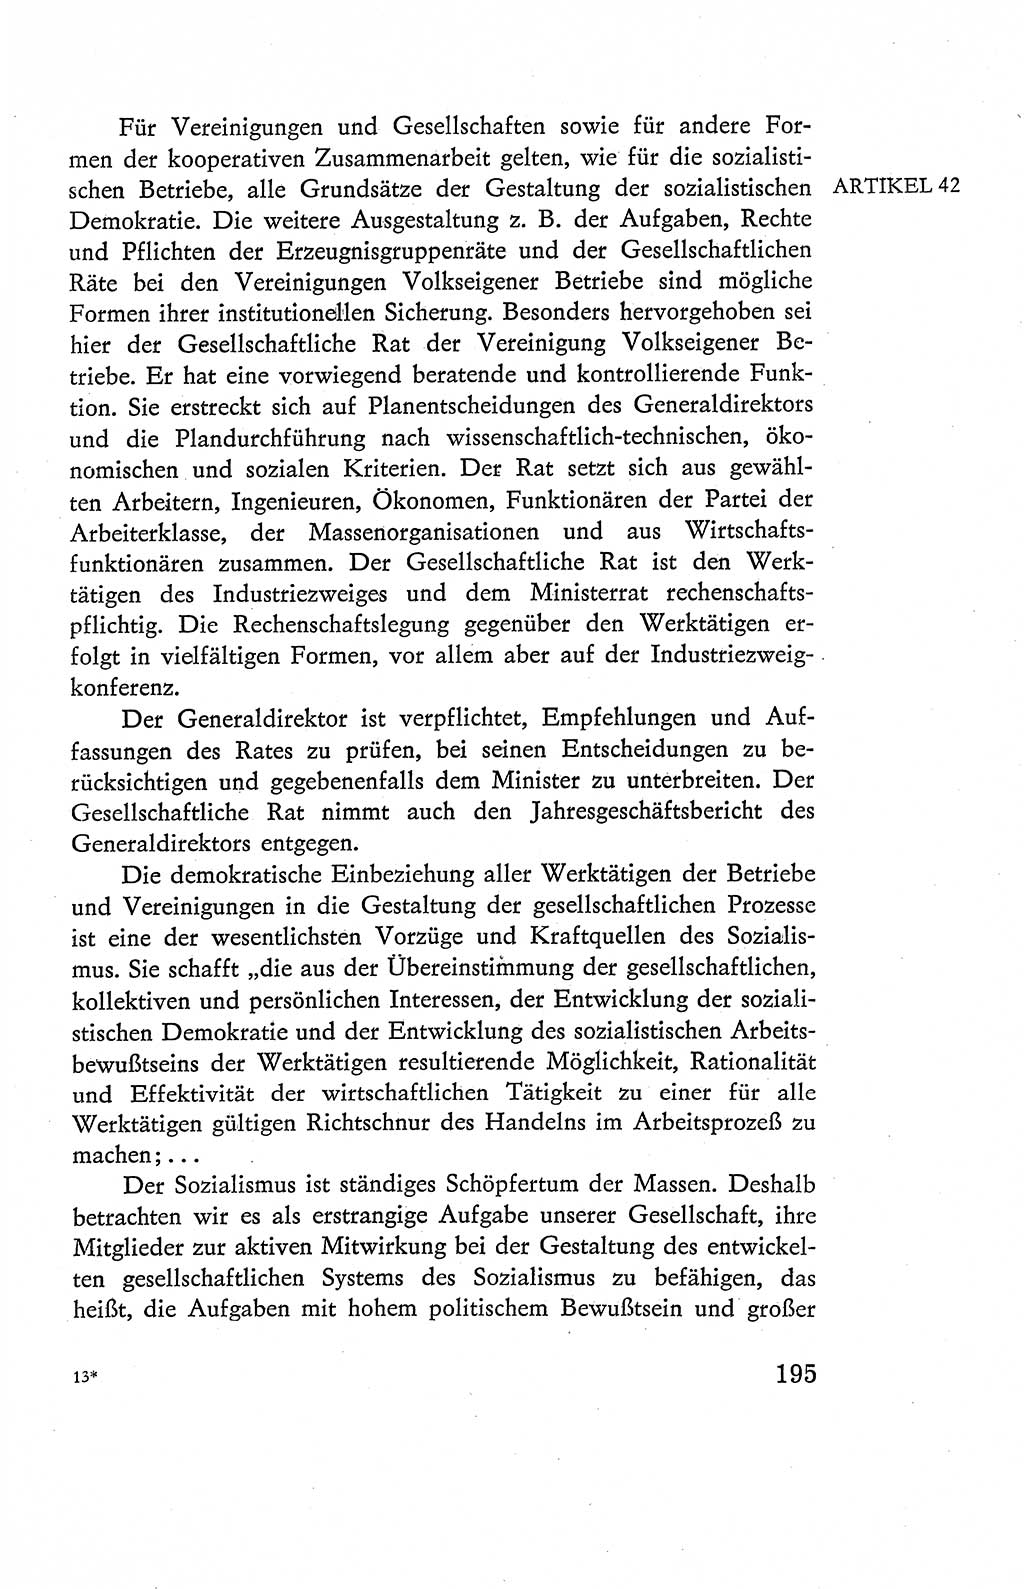 Verfassung der Deutschen Demokratischen Republik (DDR), Dokumente, Kommentar 1969, Band 2, Seite 195 (Verf. DDR Dok. Komm. 1969, Bd. 2, S. 195)